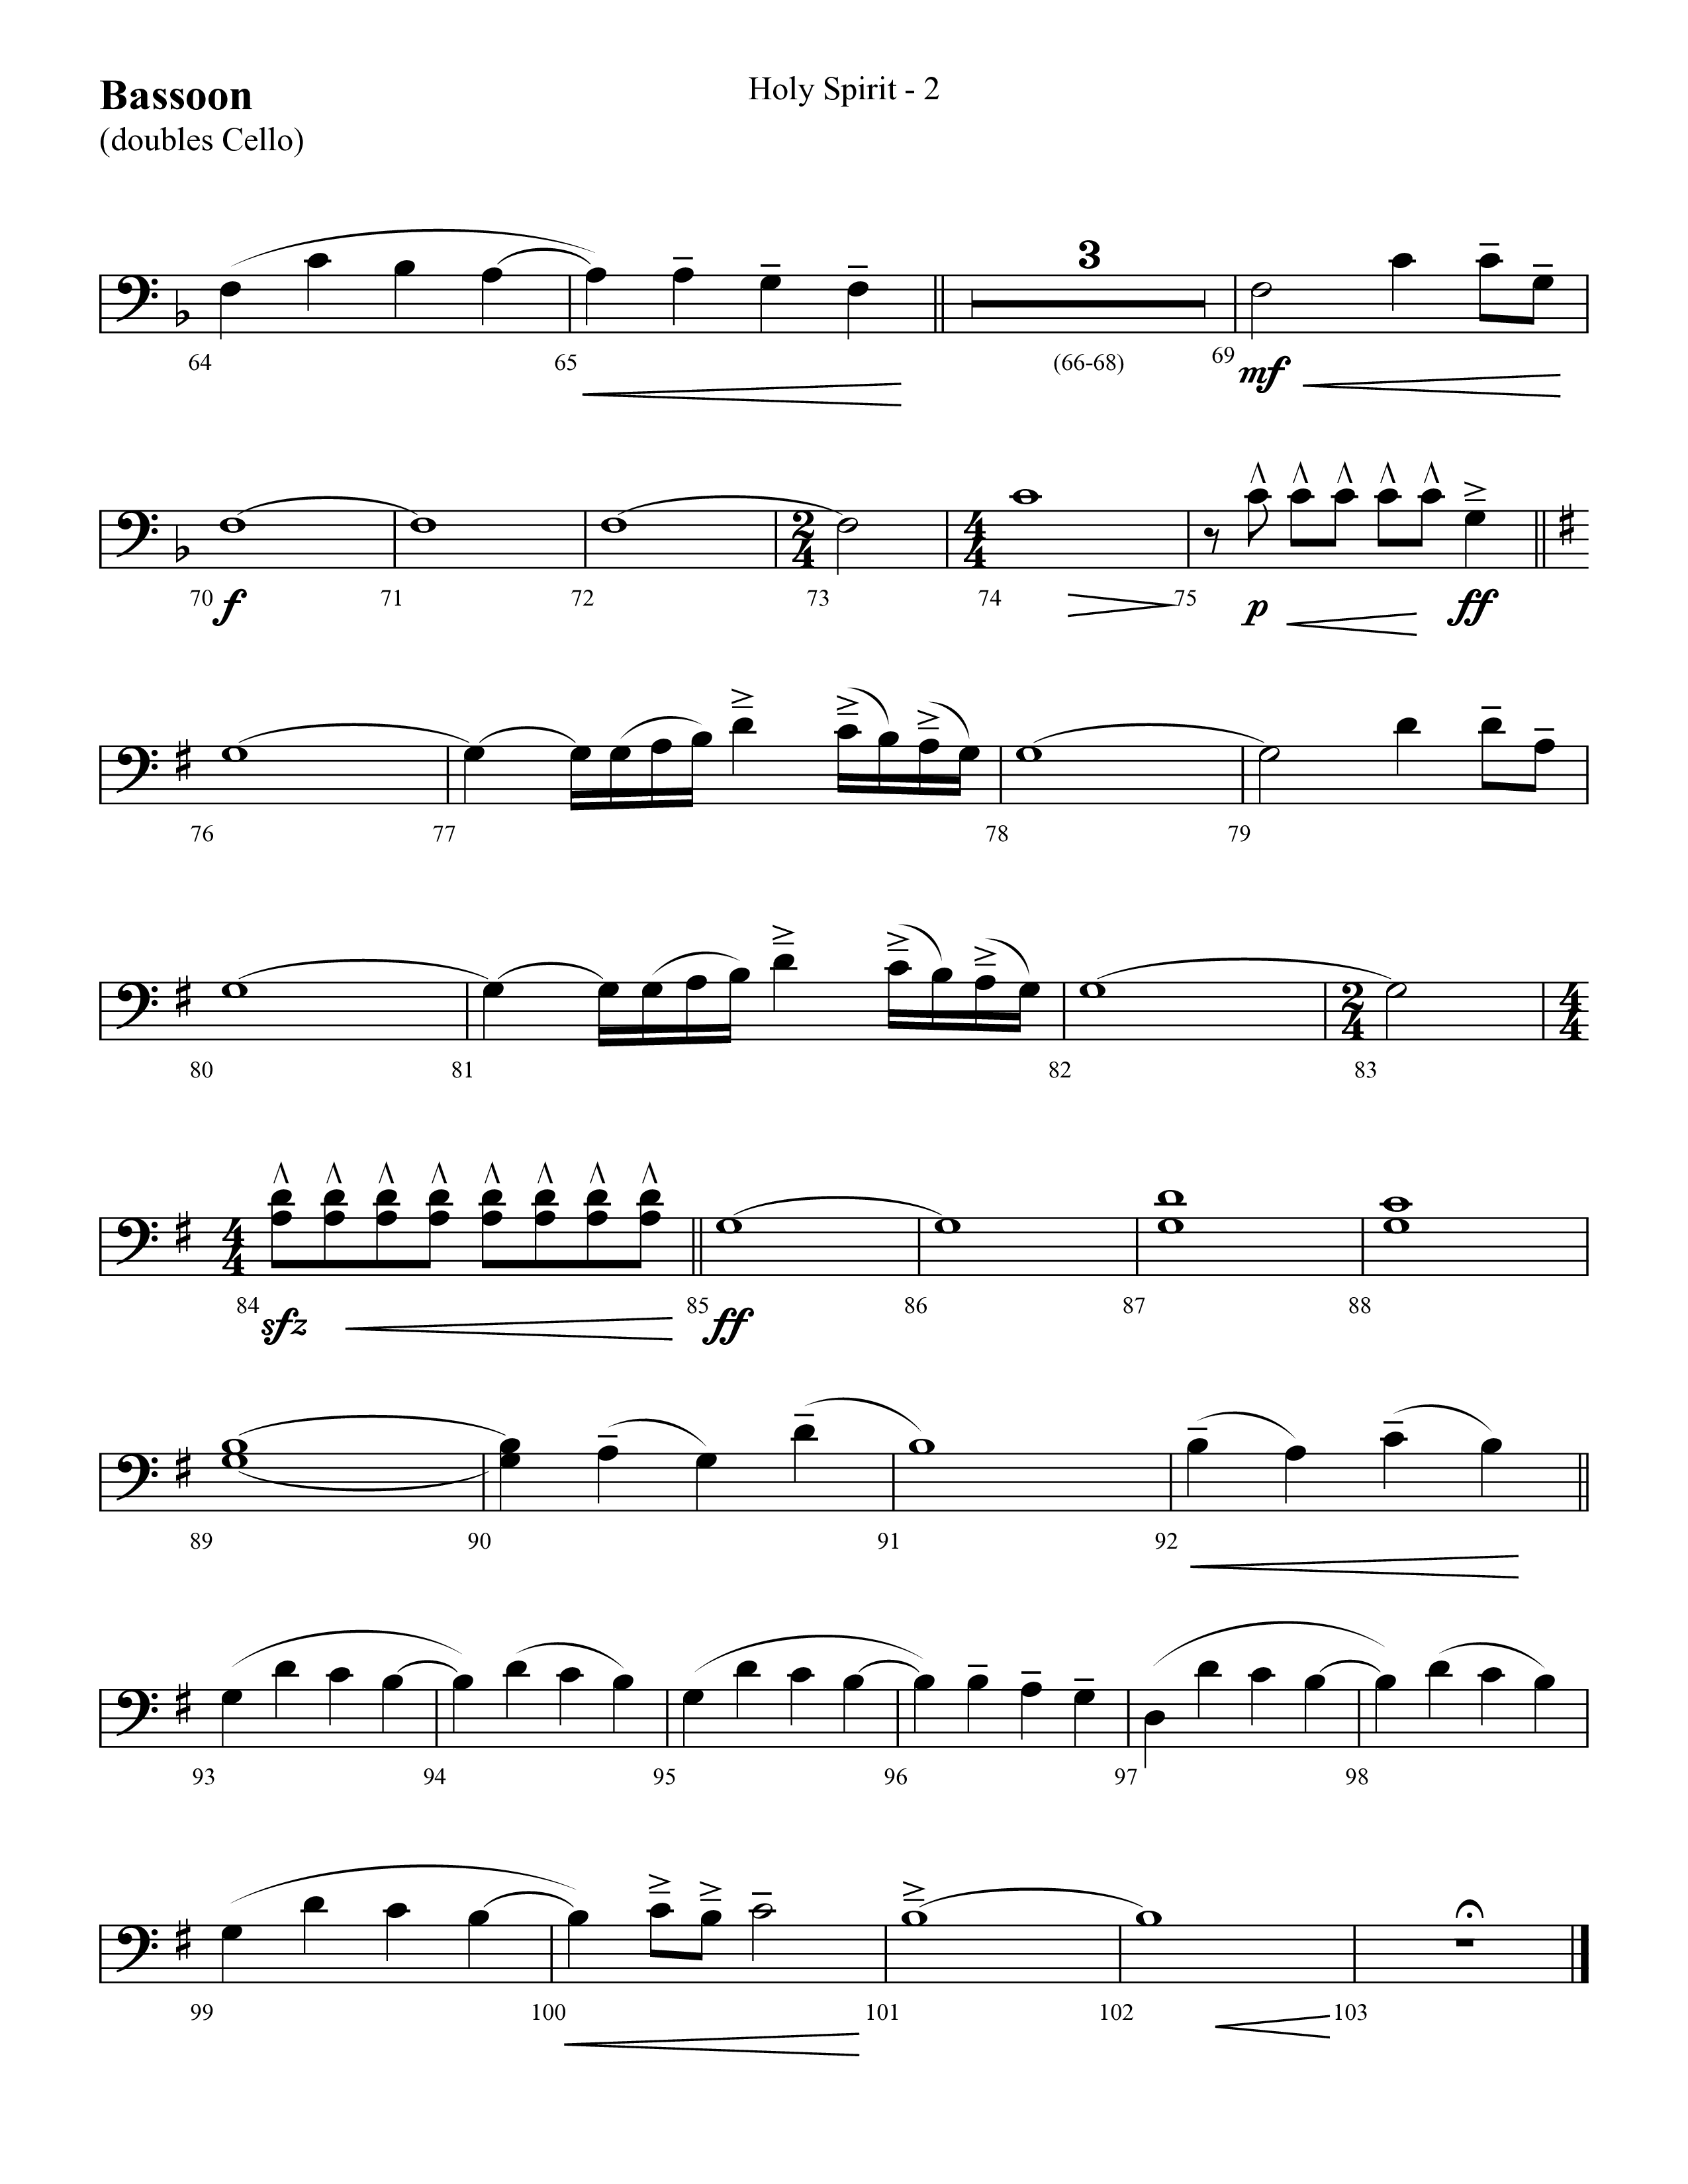 Holy Spirit  (Choral Anthem SATB) Bassoon (Lifeway Choral / Arr. Cliff Duren)